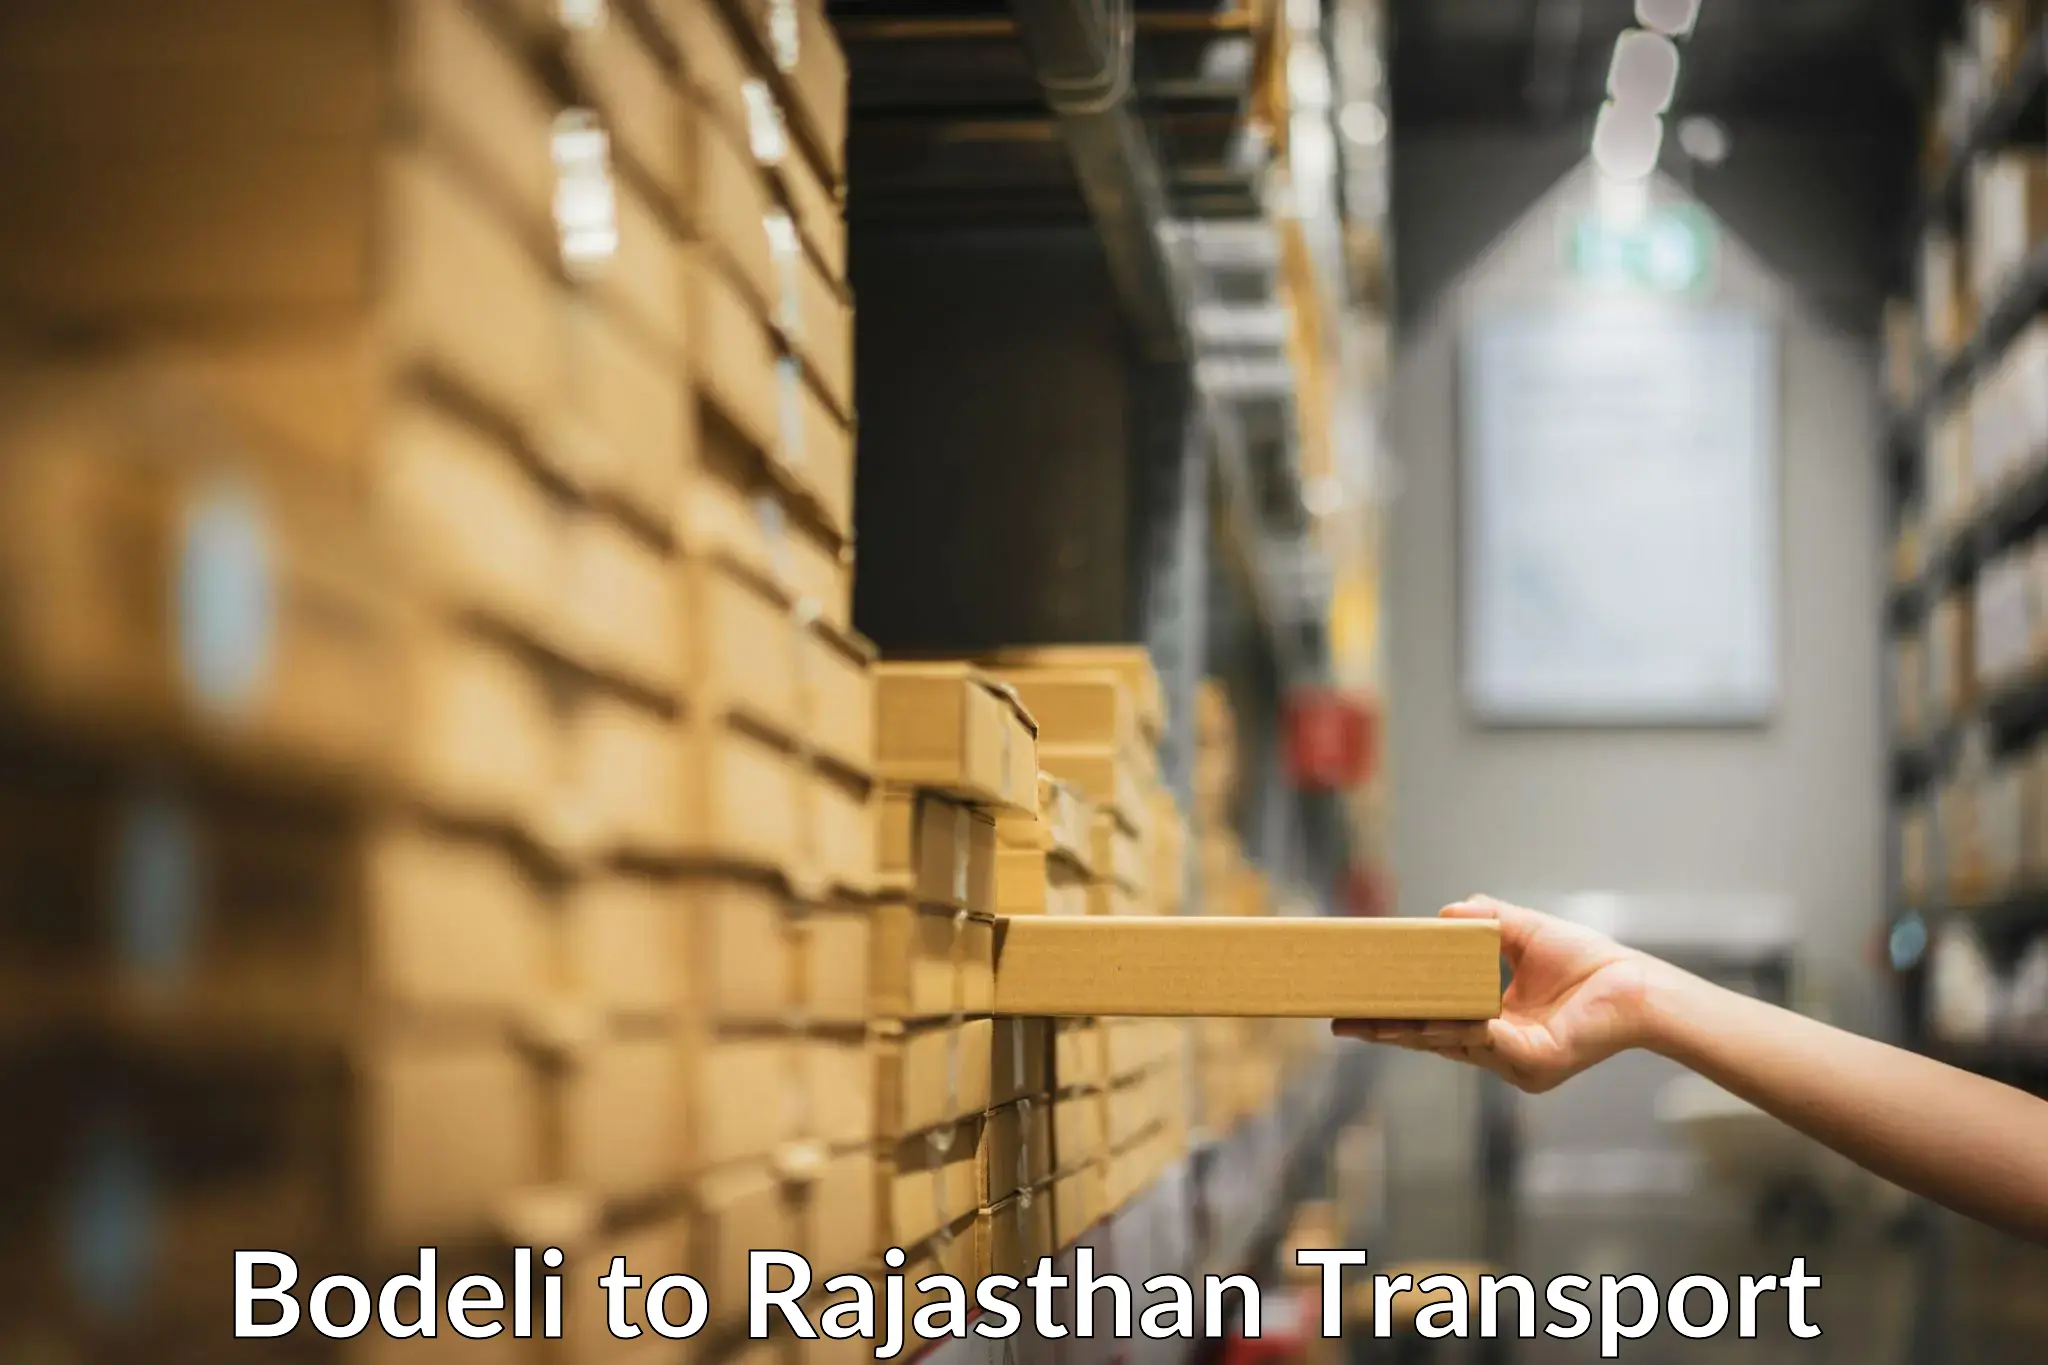 Online transport service Bodeli to Rajasthan